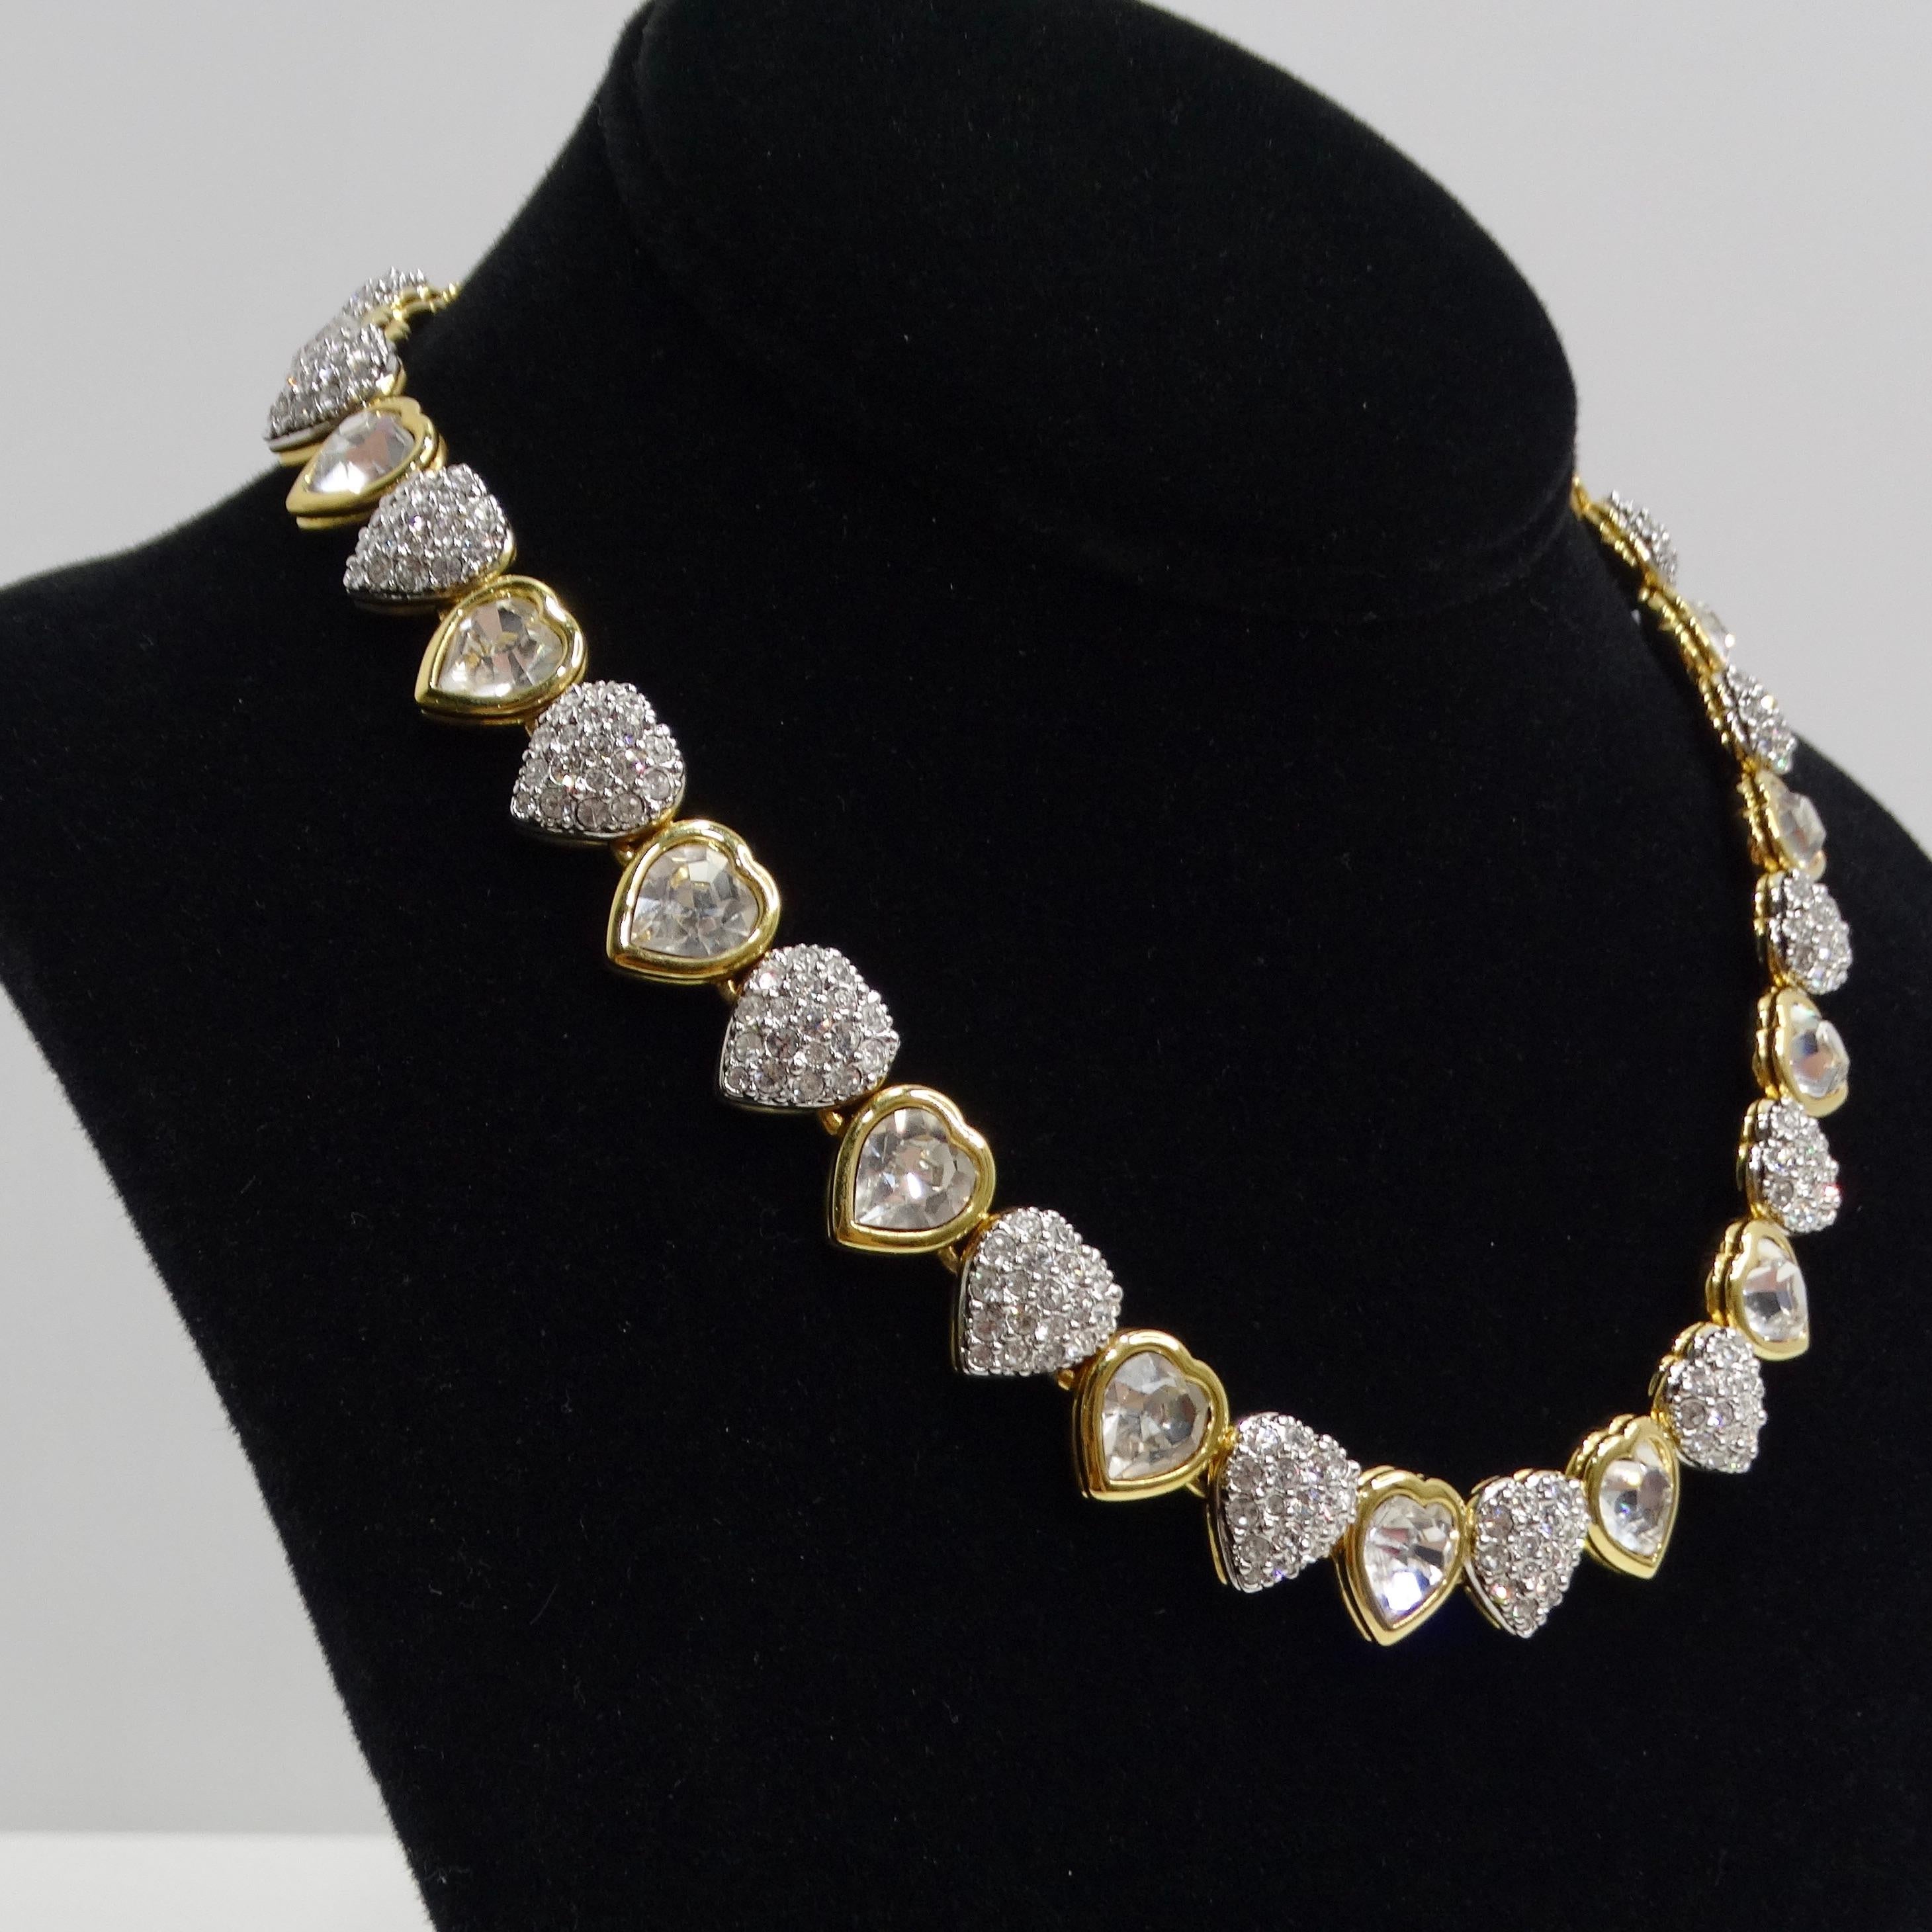 Le tour de cou Swarovski Vintage 14K Gold Plated Crystal Heart est une pièce glamour et attrayante des années 1980 qui incarne l'élégance et l'éclat associés aux cristaux Swarovski. Ce collier de style tour de cou présente une série de pendentifs en